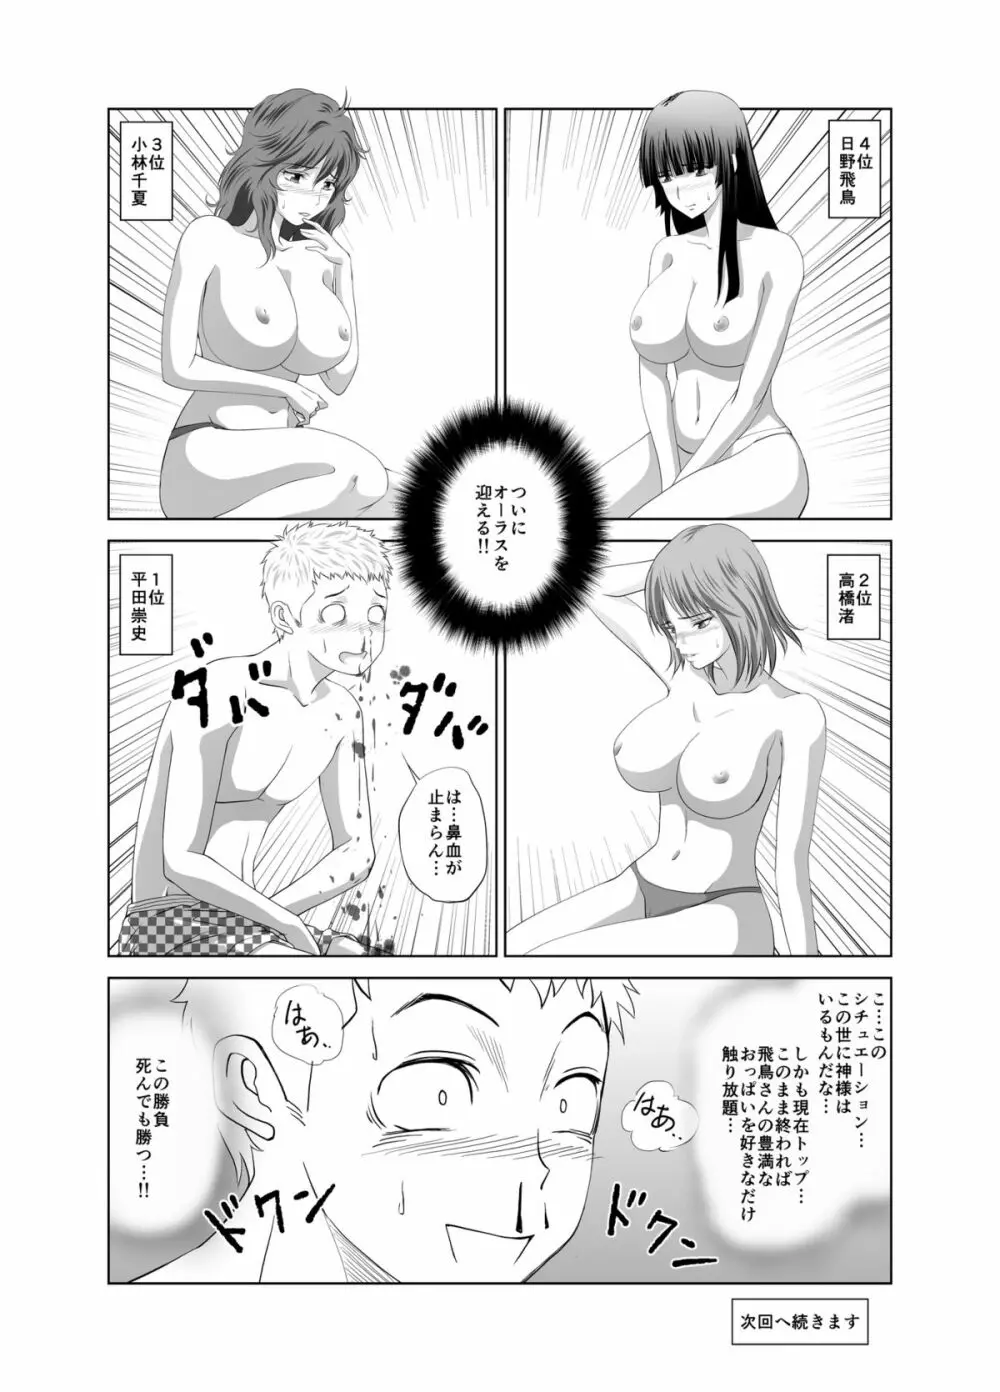 脱衣麻雀～漫画編～【完成版】 Page.19